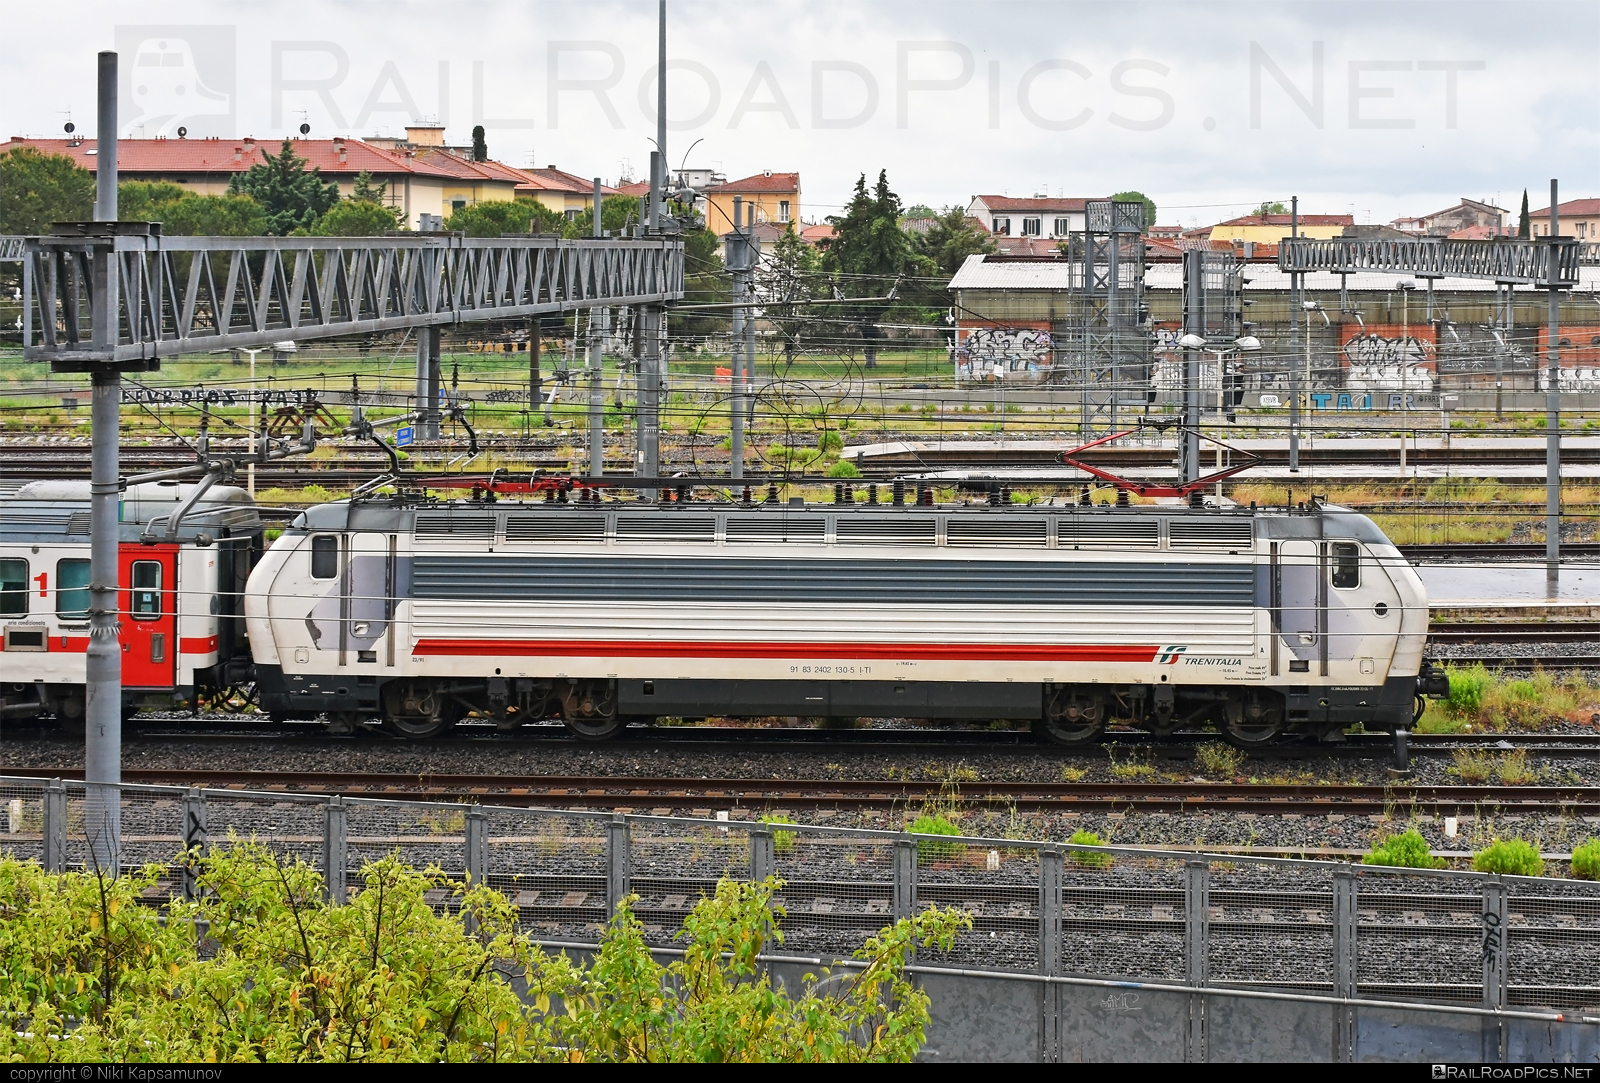 Ansaldo Trasporti Class E.402B - 402 130 operated by Trenitalia S.p.A. #ansaldo402 #ansaldoTrasporti #ansaldoe402 #ansaldoe402b #e402 #e402b #ferroviedellostato #fs #fsitaliane #trenitalia #trenitaliaspa